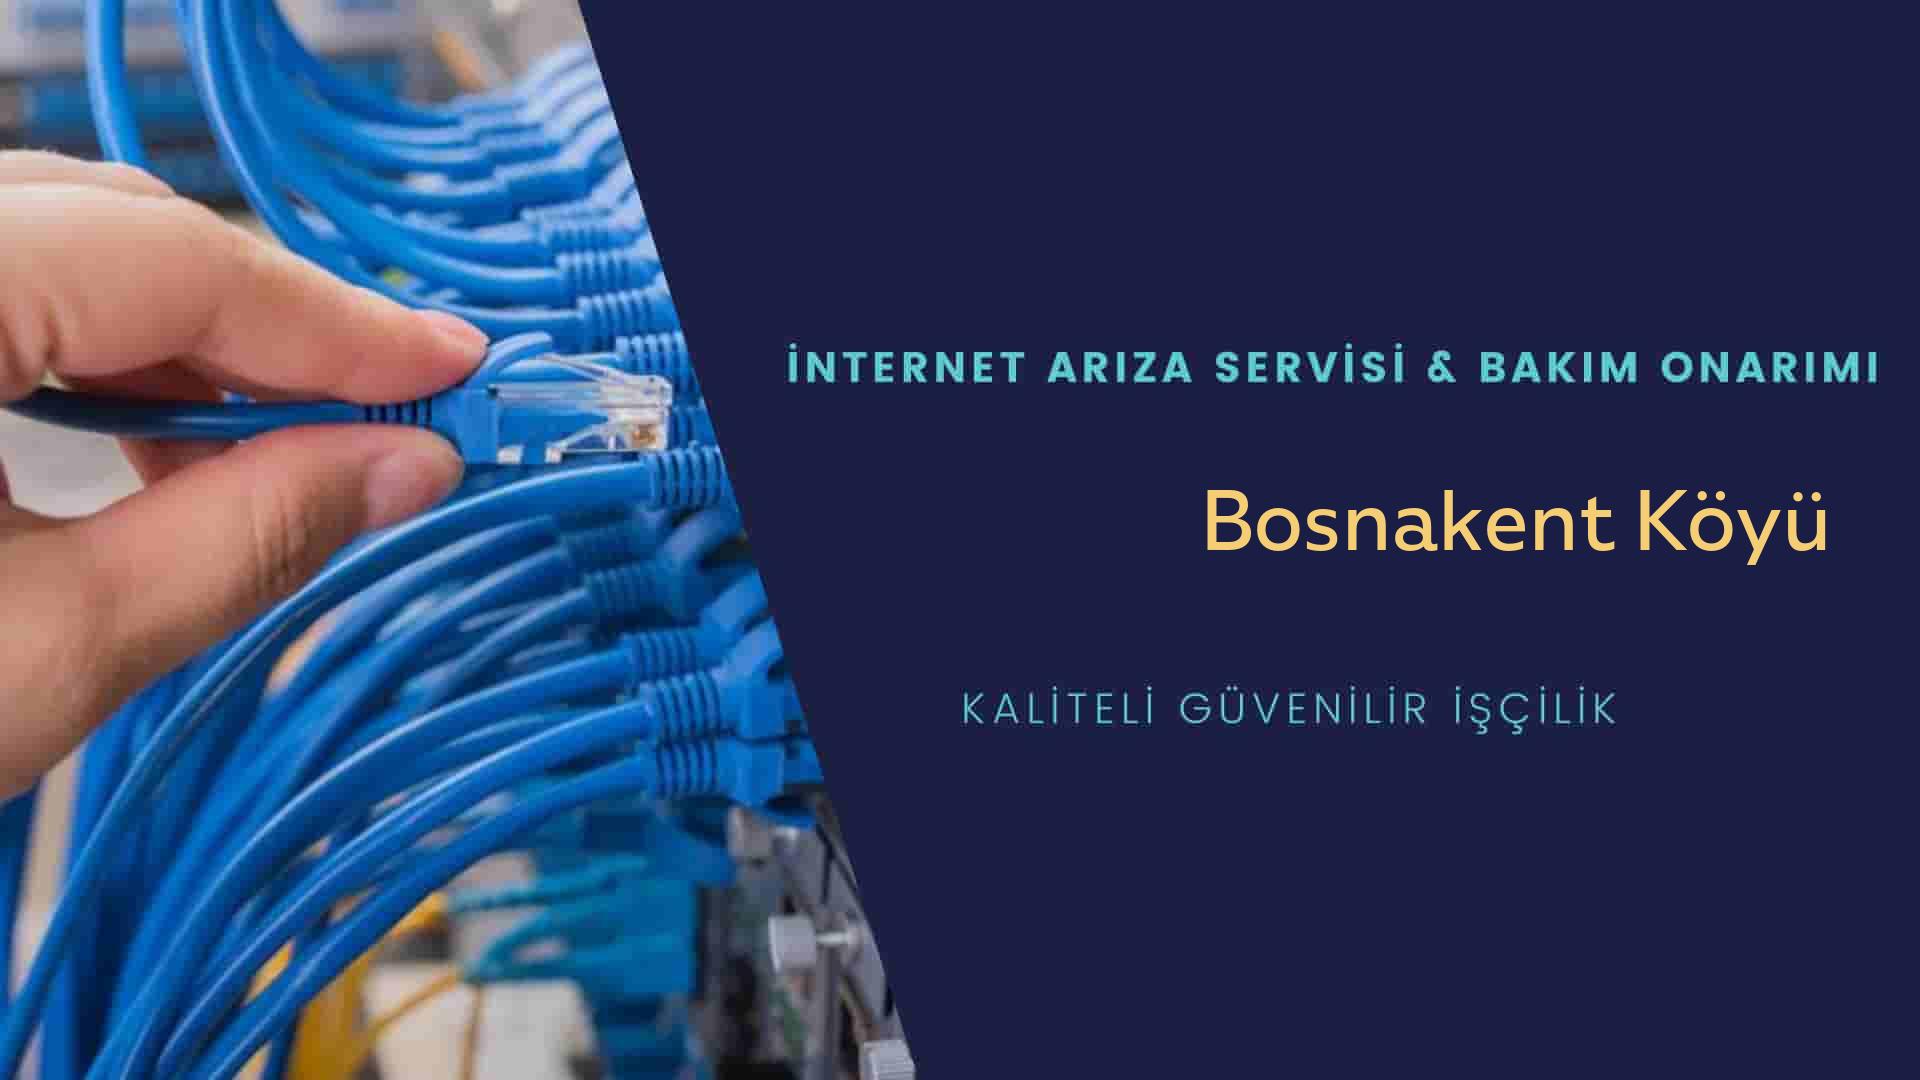 Bosnakent Köyü internet kablosu çekimi yapan yerler veya elektrikçiler mi? arıyorsunuz doğru yerdesiniz o zaman sizlere 7/24 yardımcı olacak profesyonel ustalarımız bir telefon kadar yakındır size.